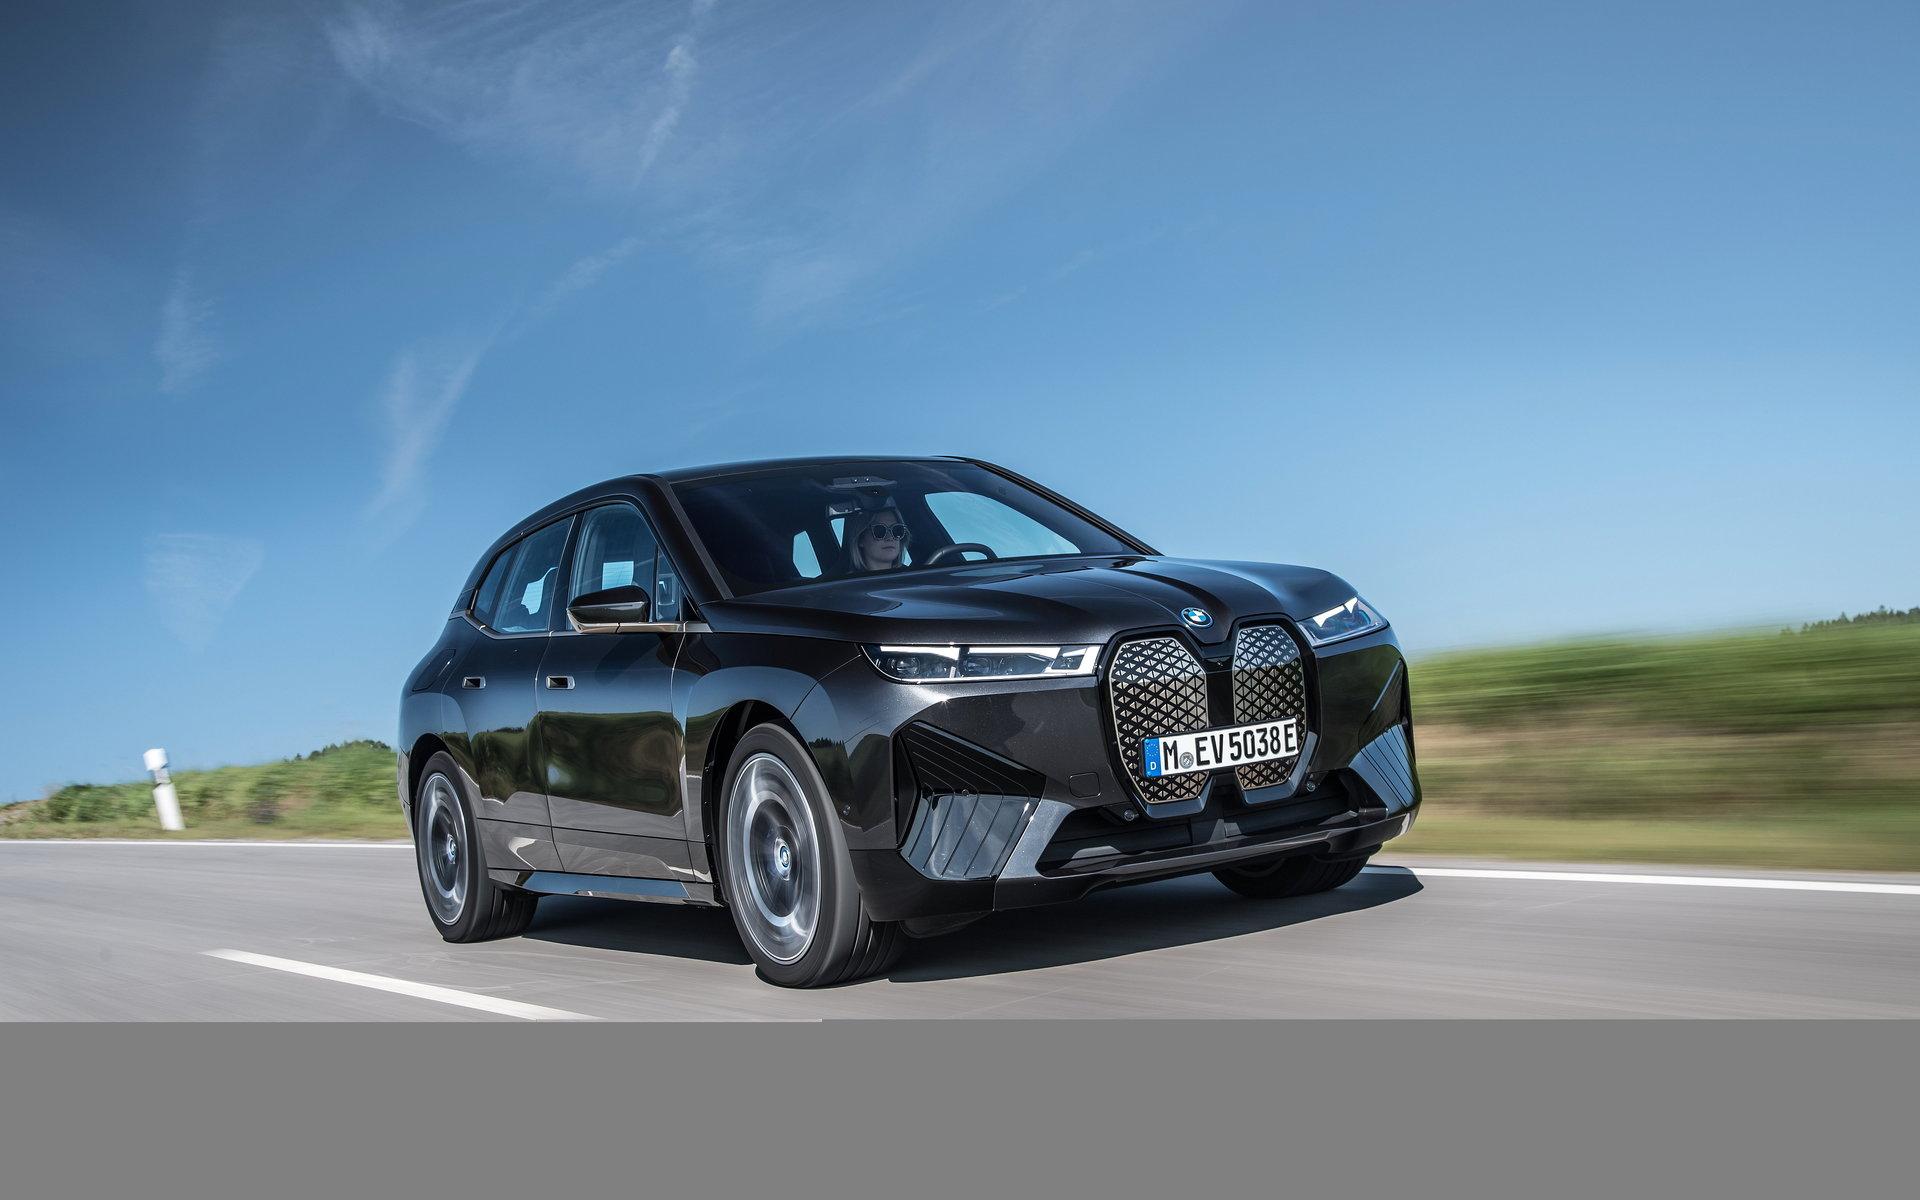 Med väl isolerade elmotorer och ljuddämpande skum i däcken får passagerarna i BMW:s iX en tyst resa.